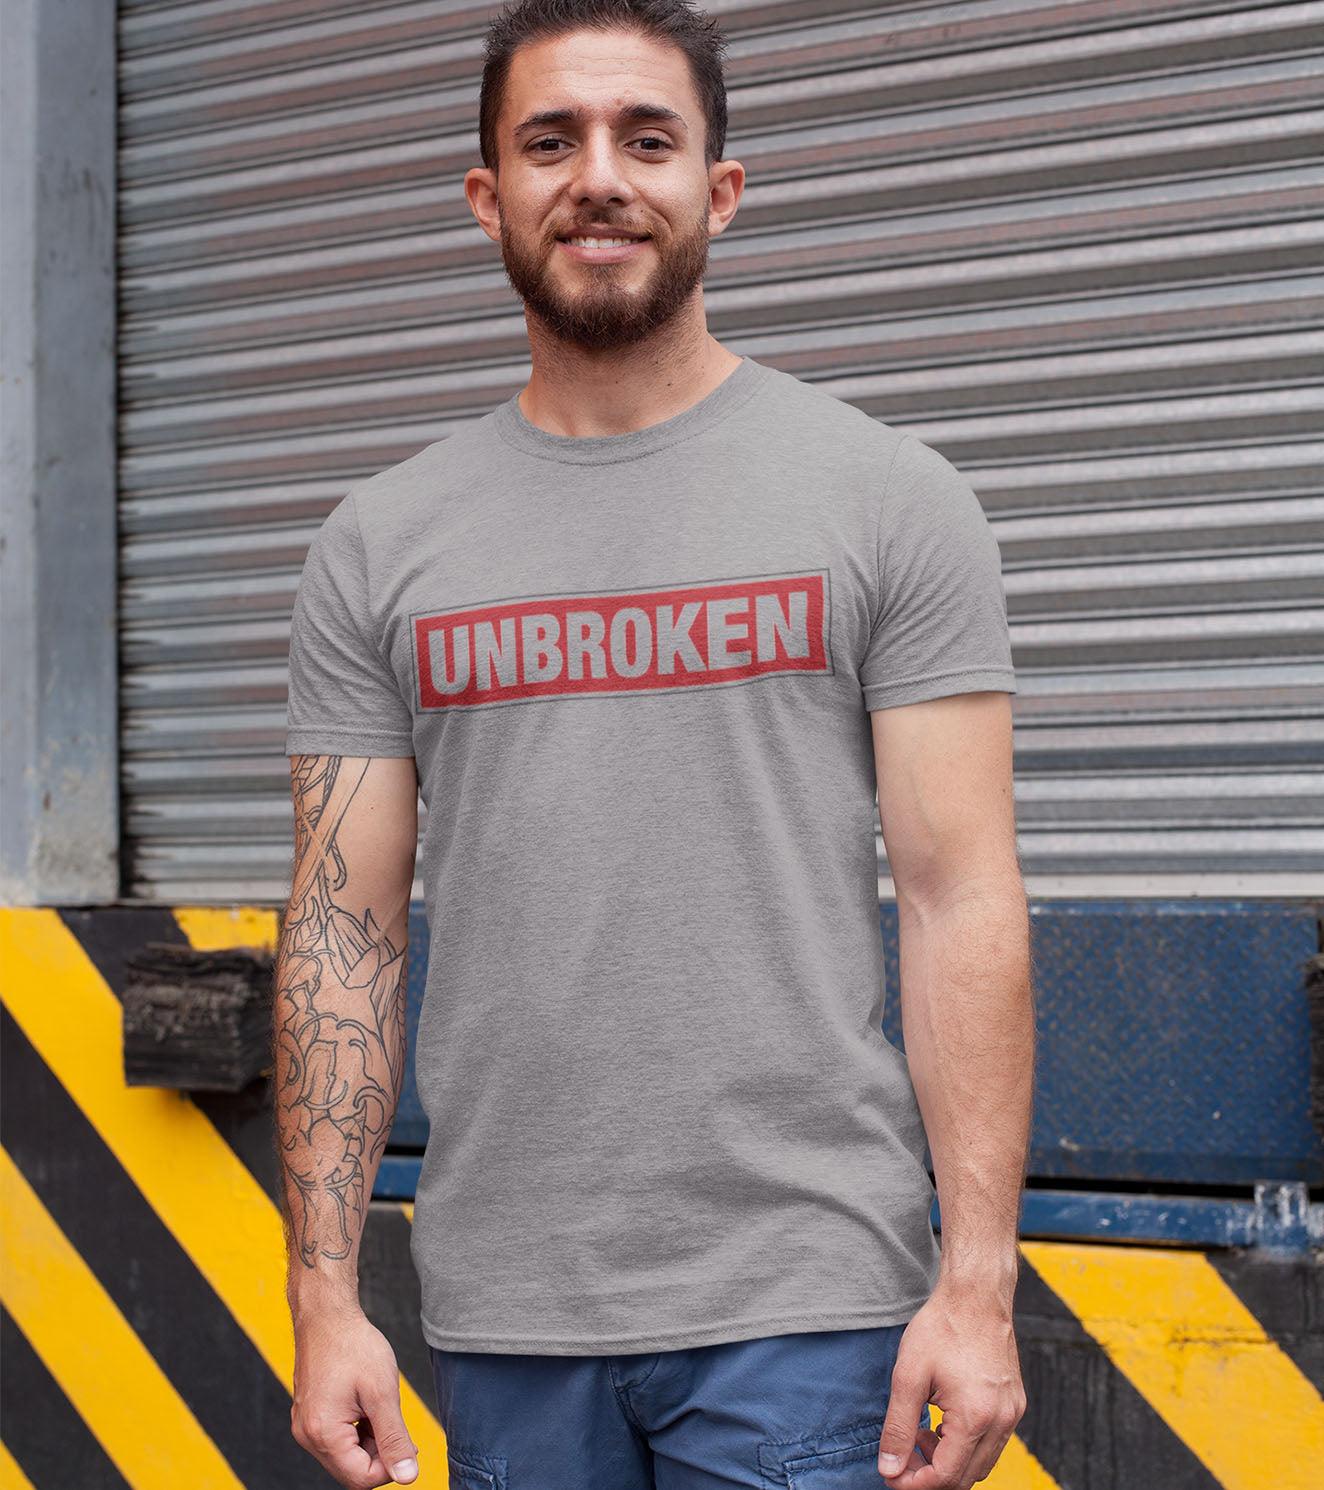 Men's Unbroken T-shirt (Rhino Grey) - wodarmour